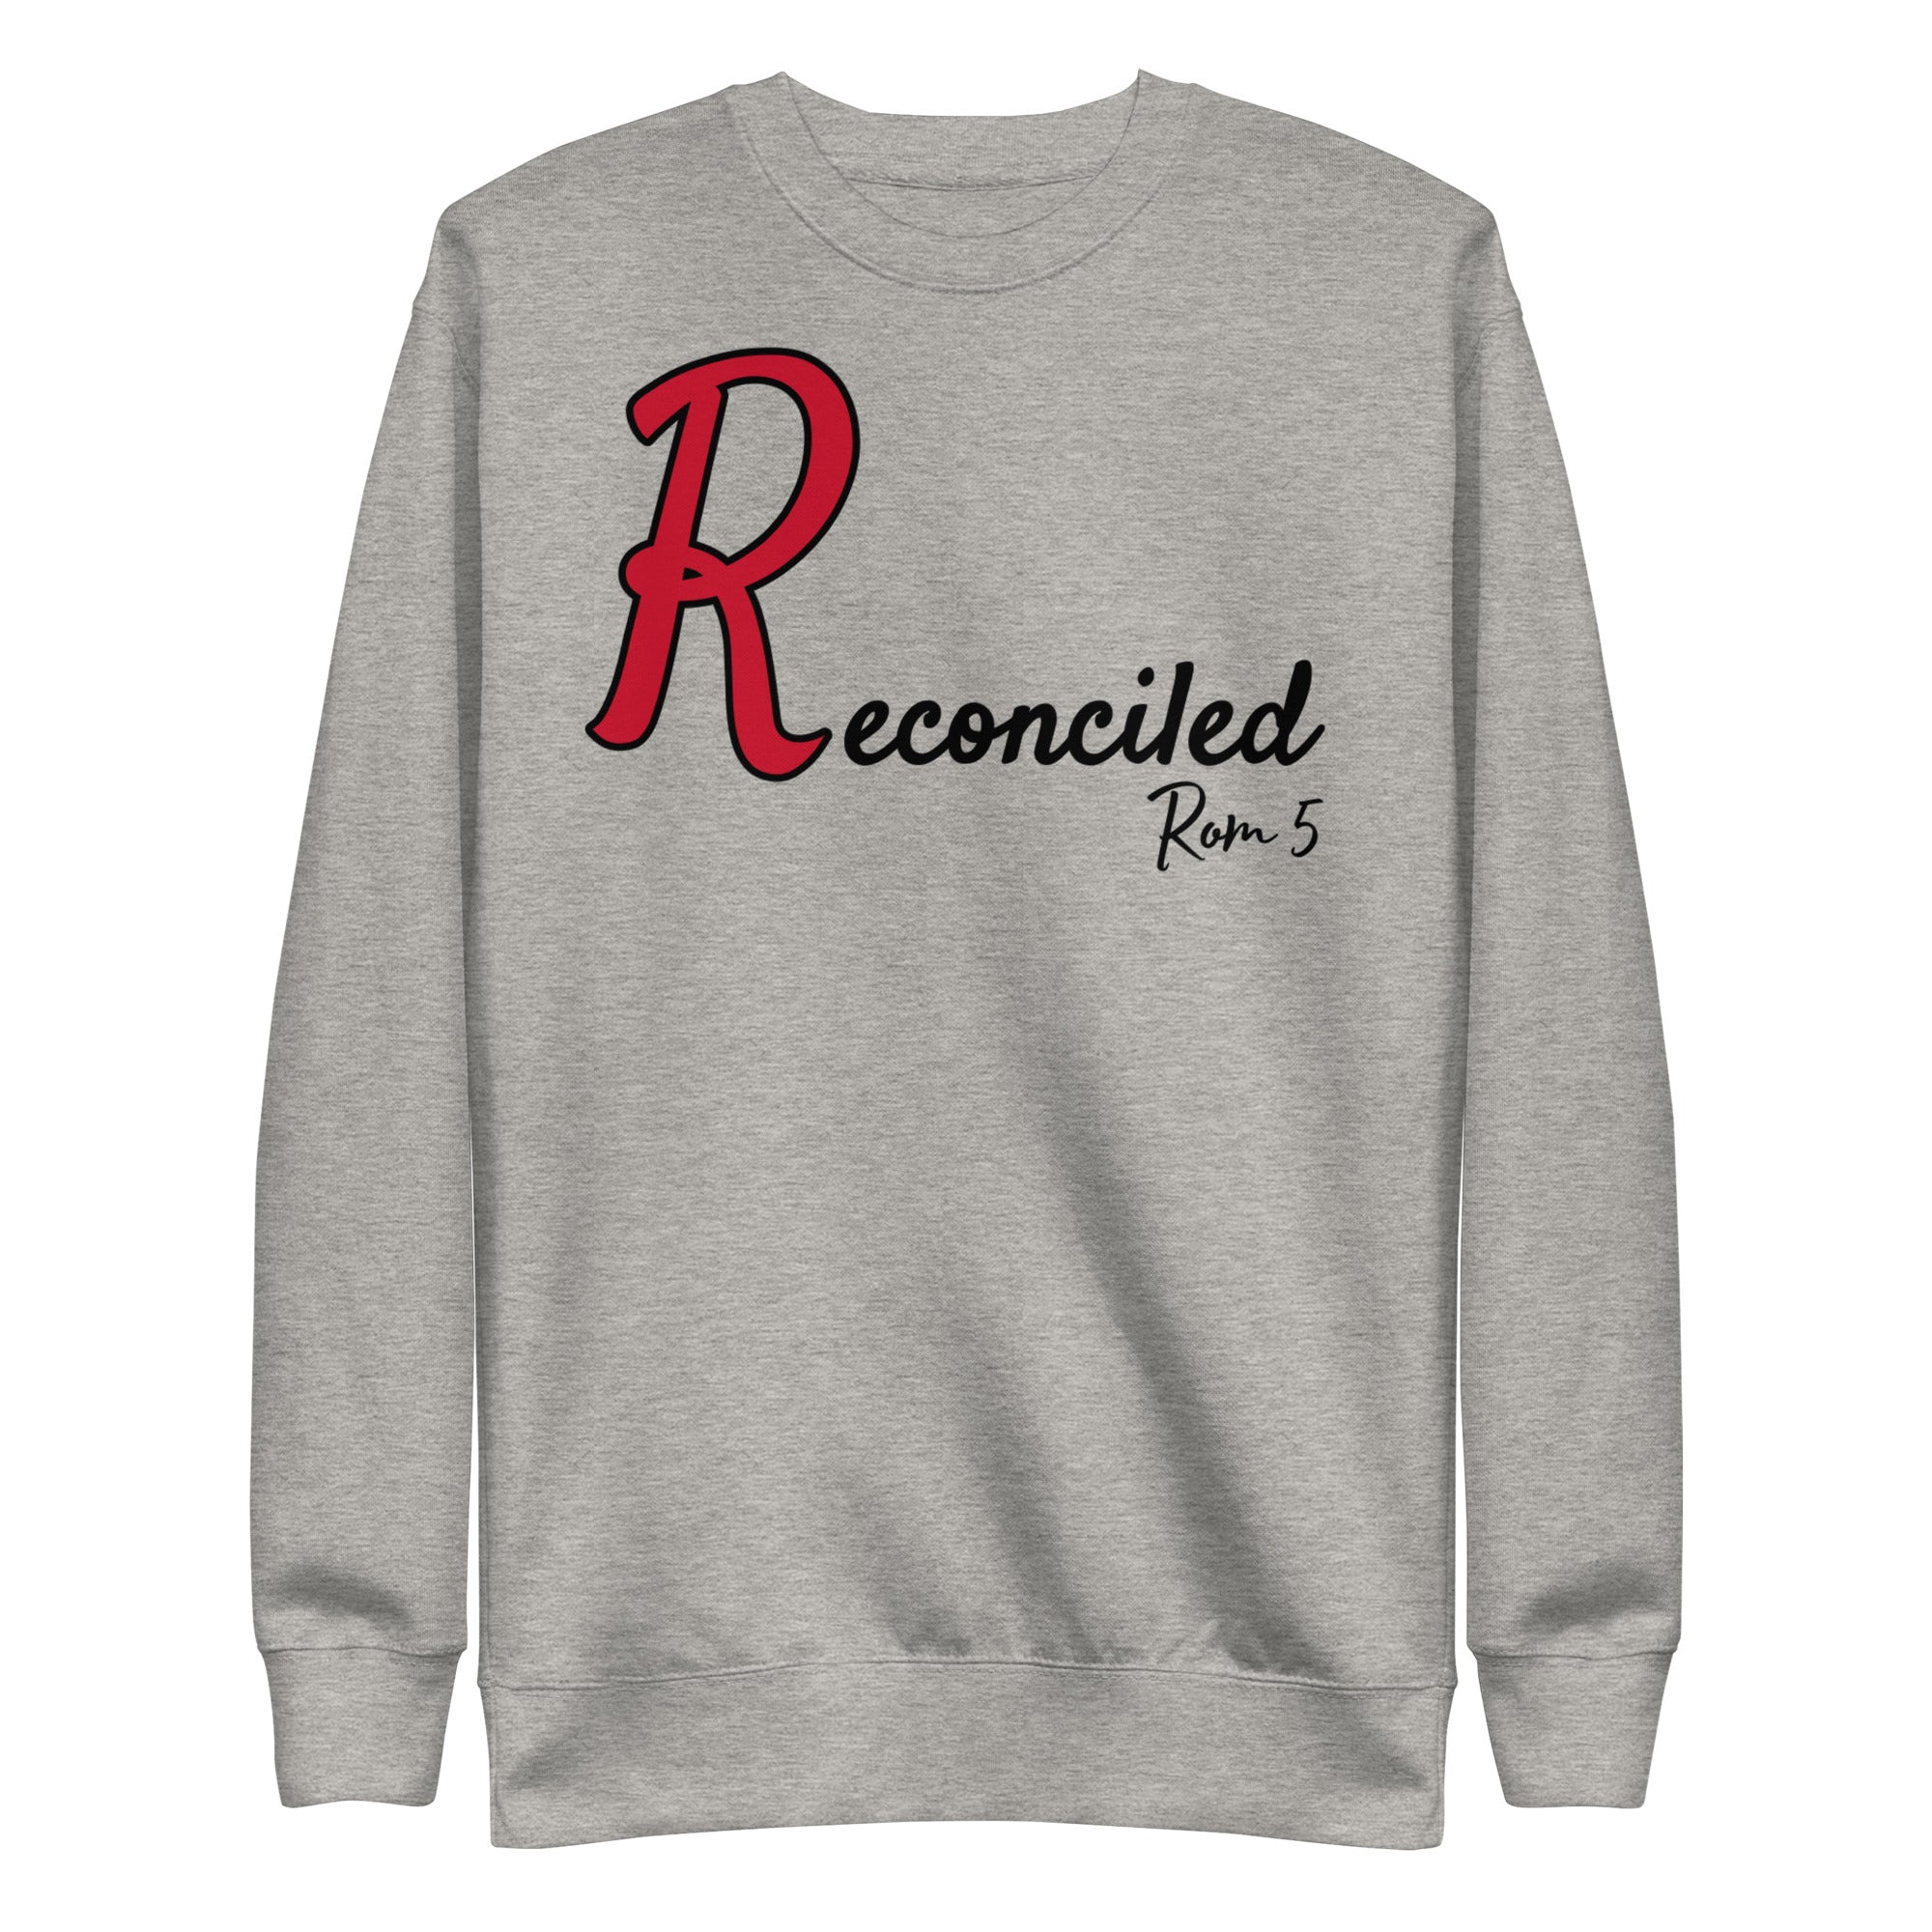 Reconciled Unisex Premium Sweatshirt